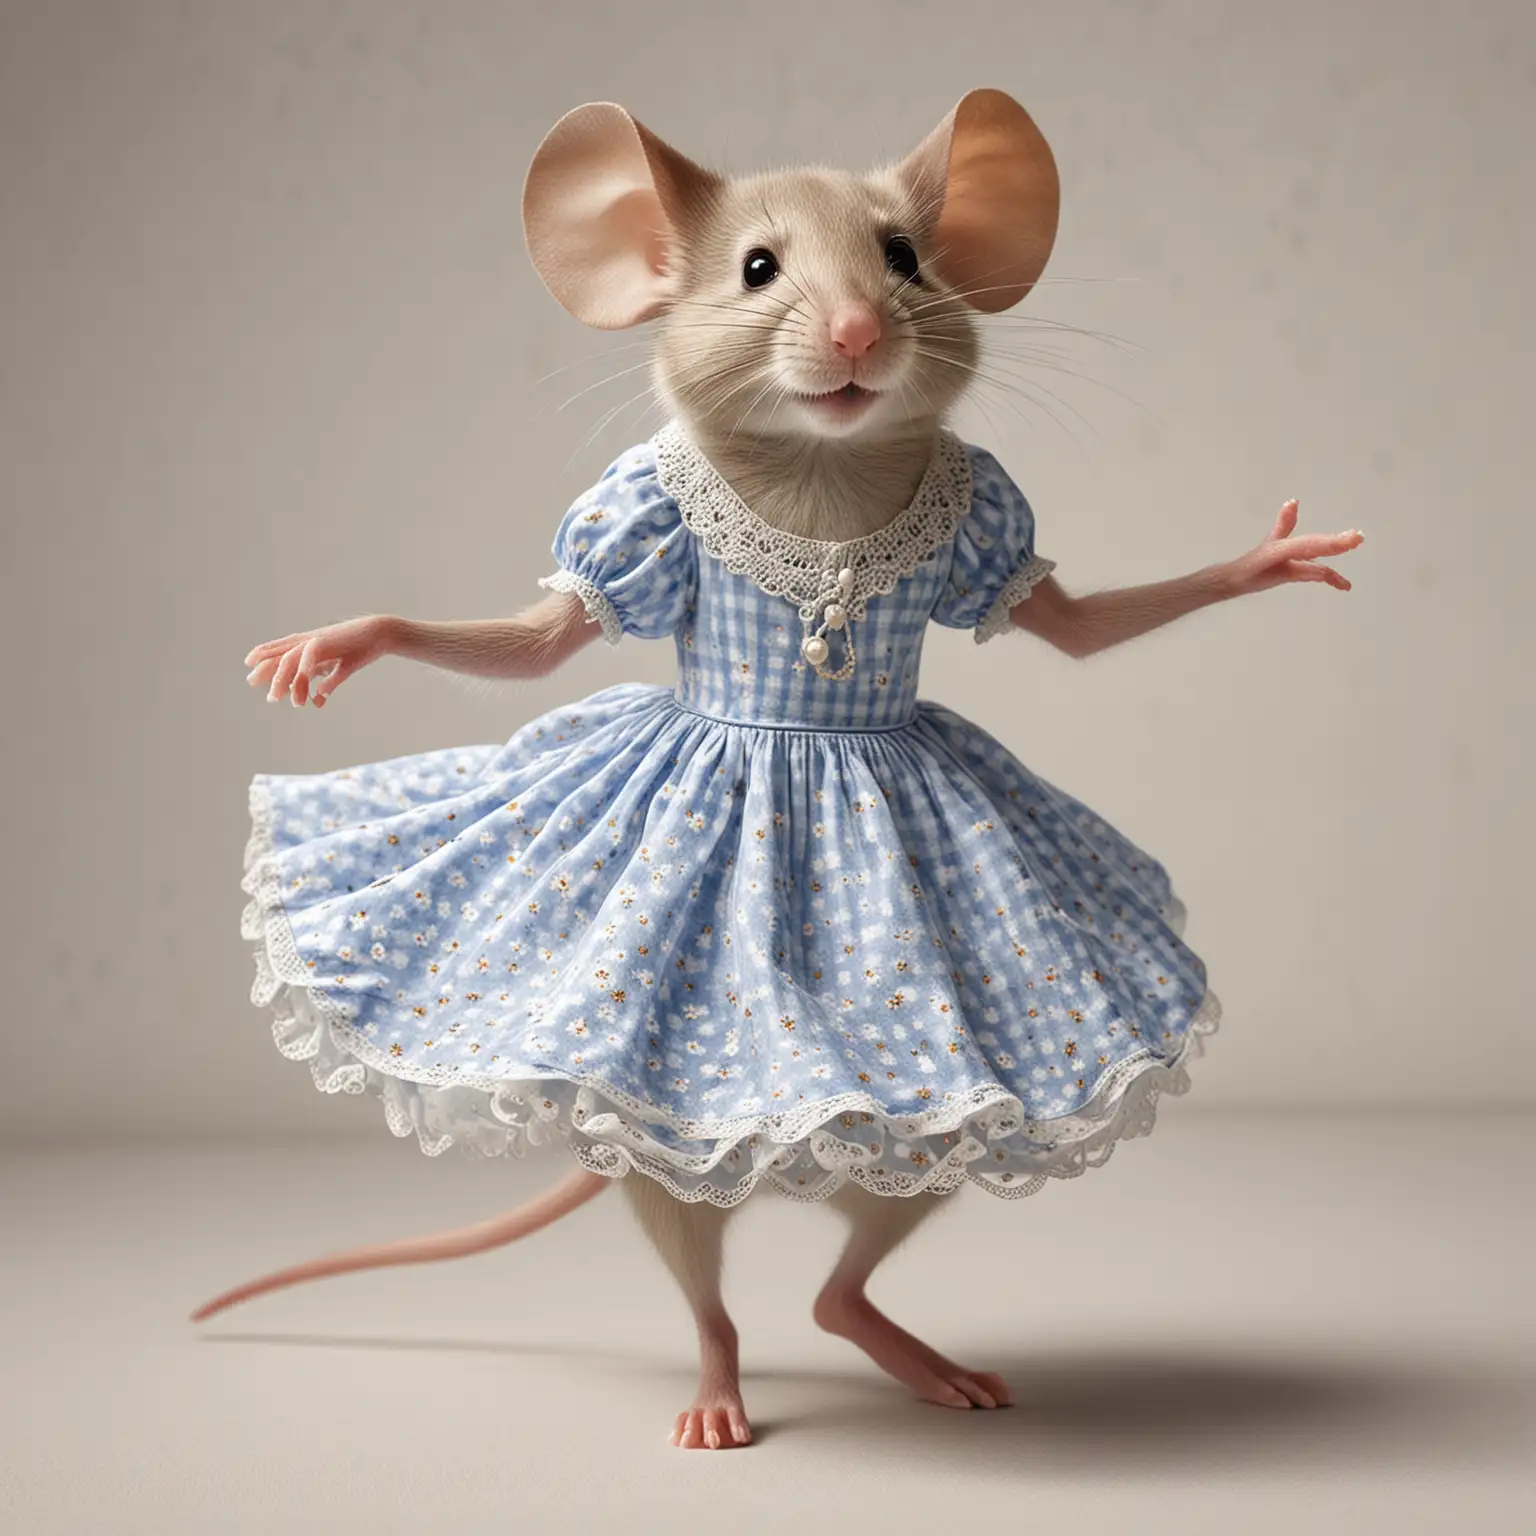 η ποντικίνα φοράει φόρεμα και χορεύει